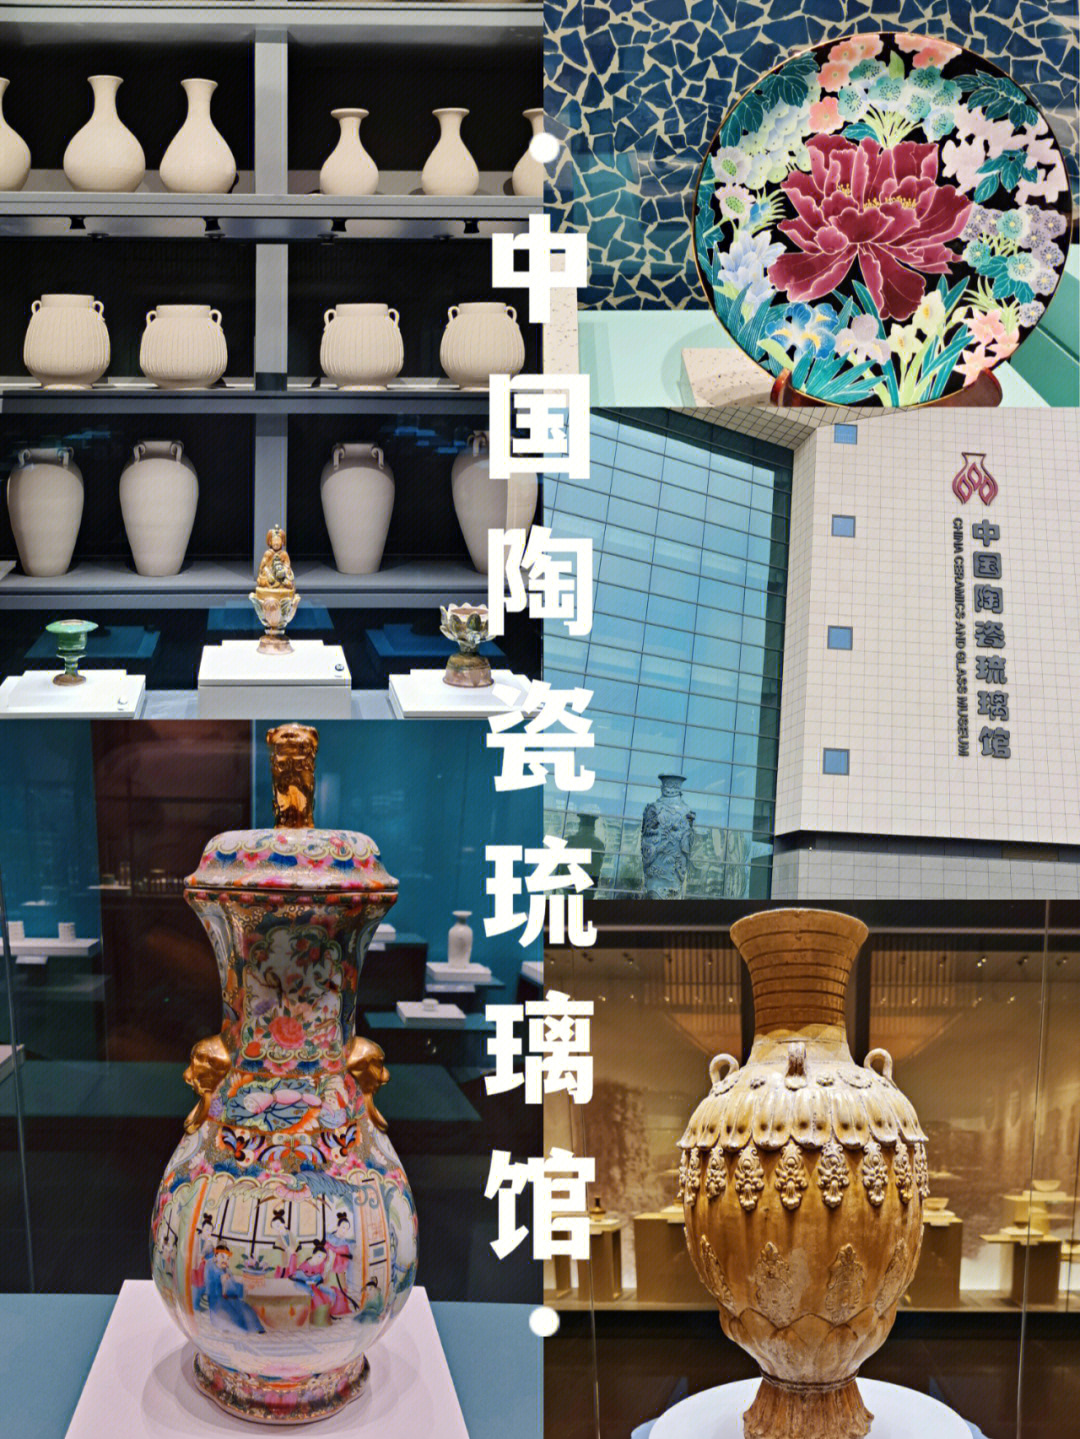 了叭93中国陶瓷琉璃馆96国家一级博物馆97建筑面积约5万平方米